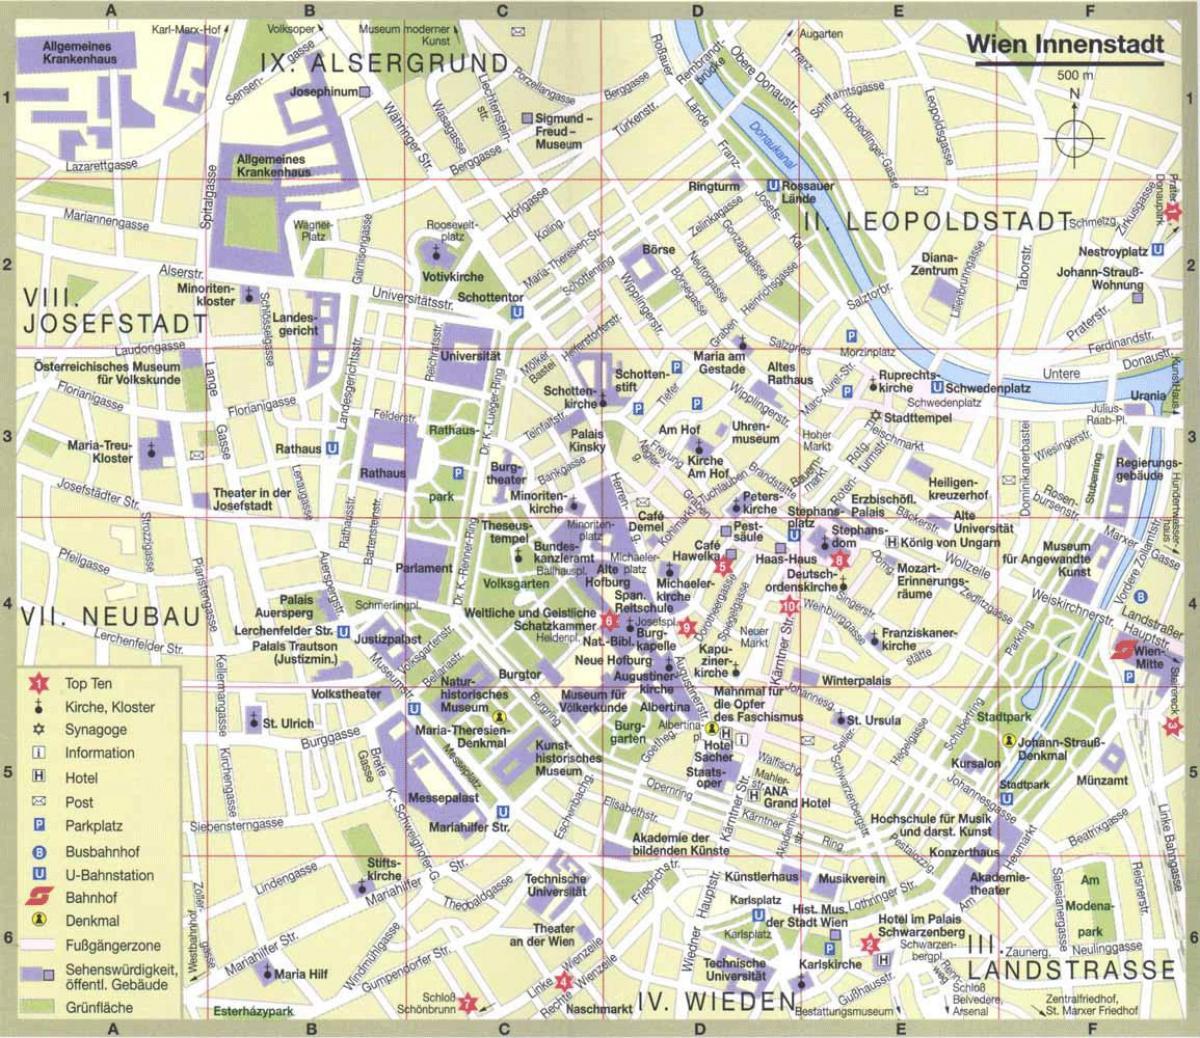 فيينا المدينة على الخريطة السياحية